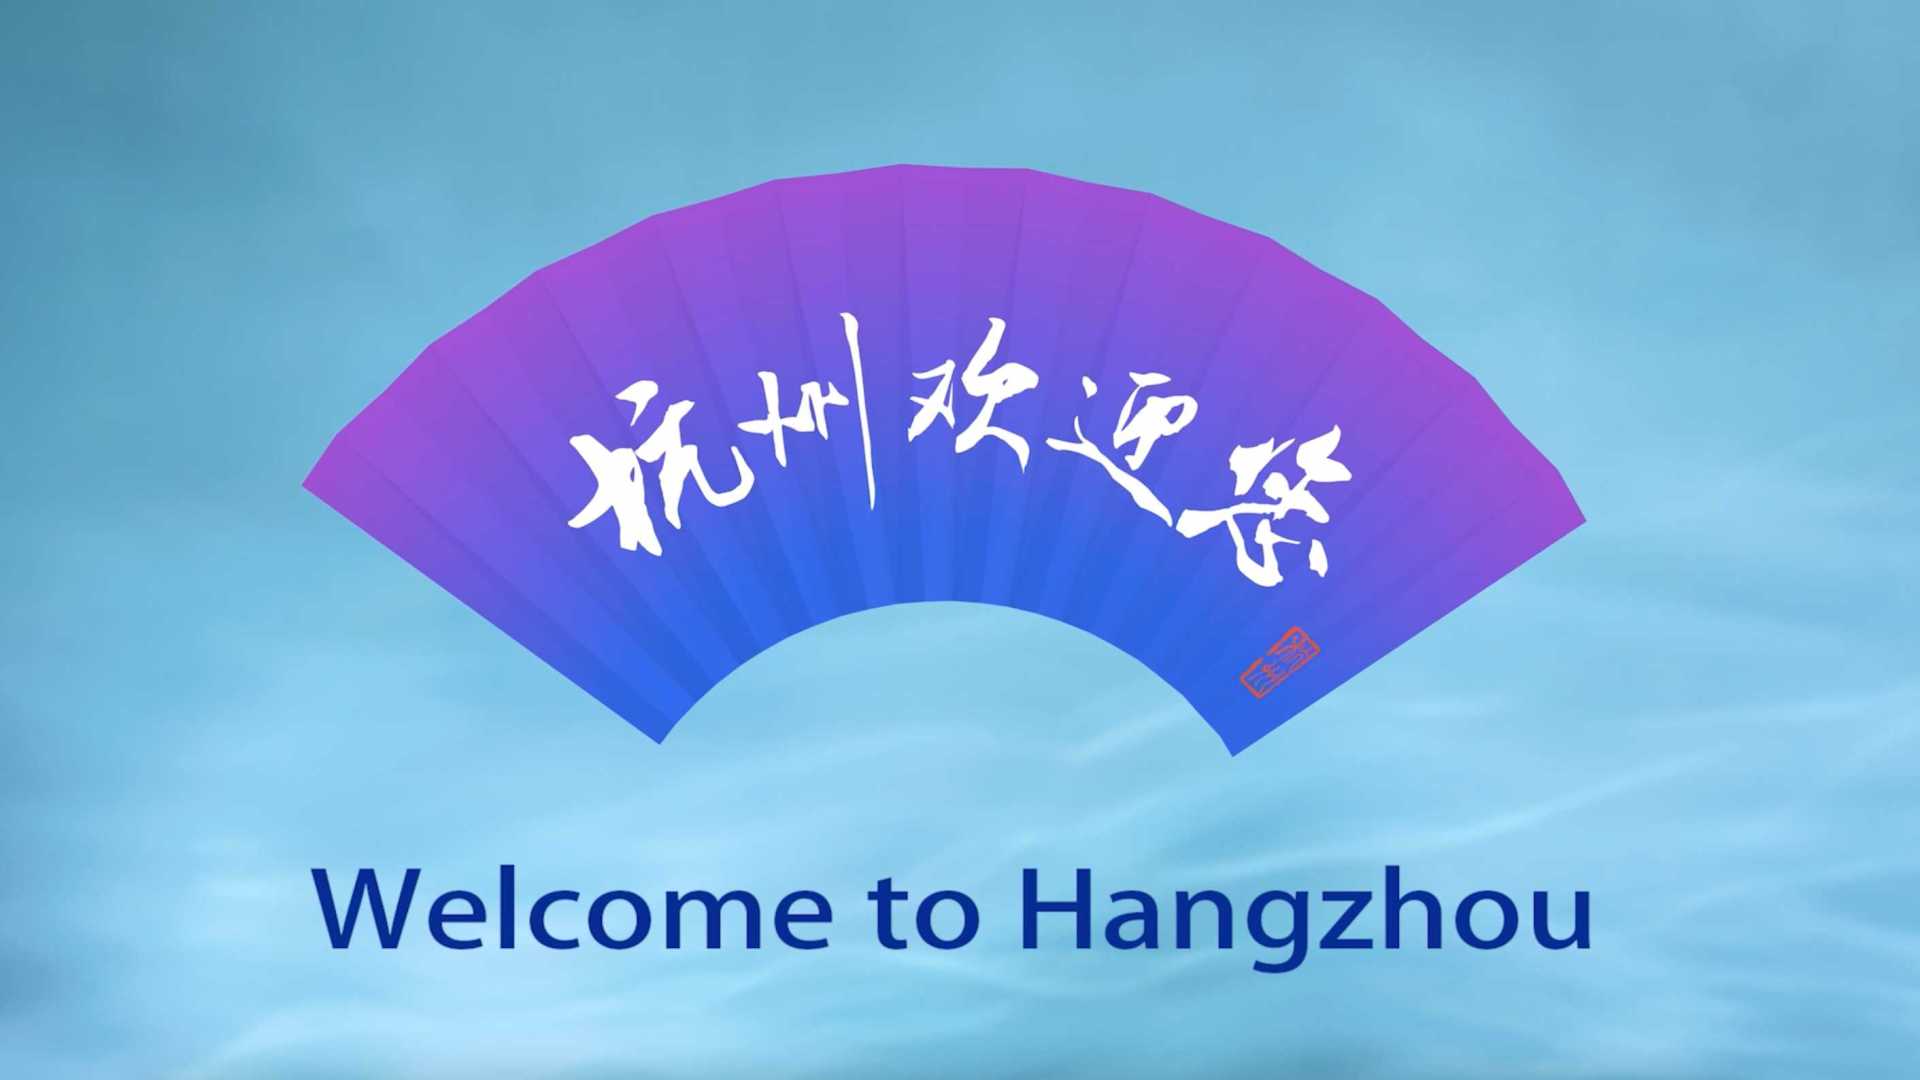 亚运会倒计时1天宣传片-《杭州欢迎您》